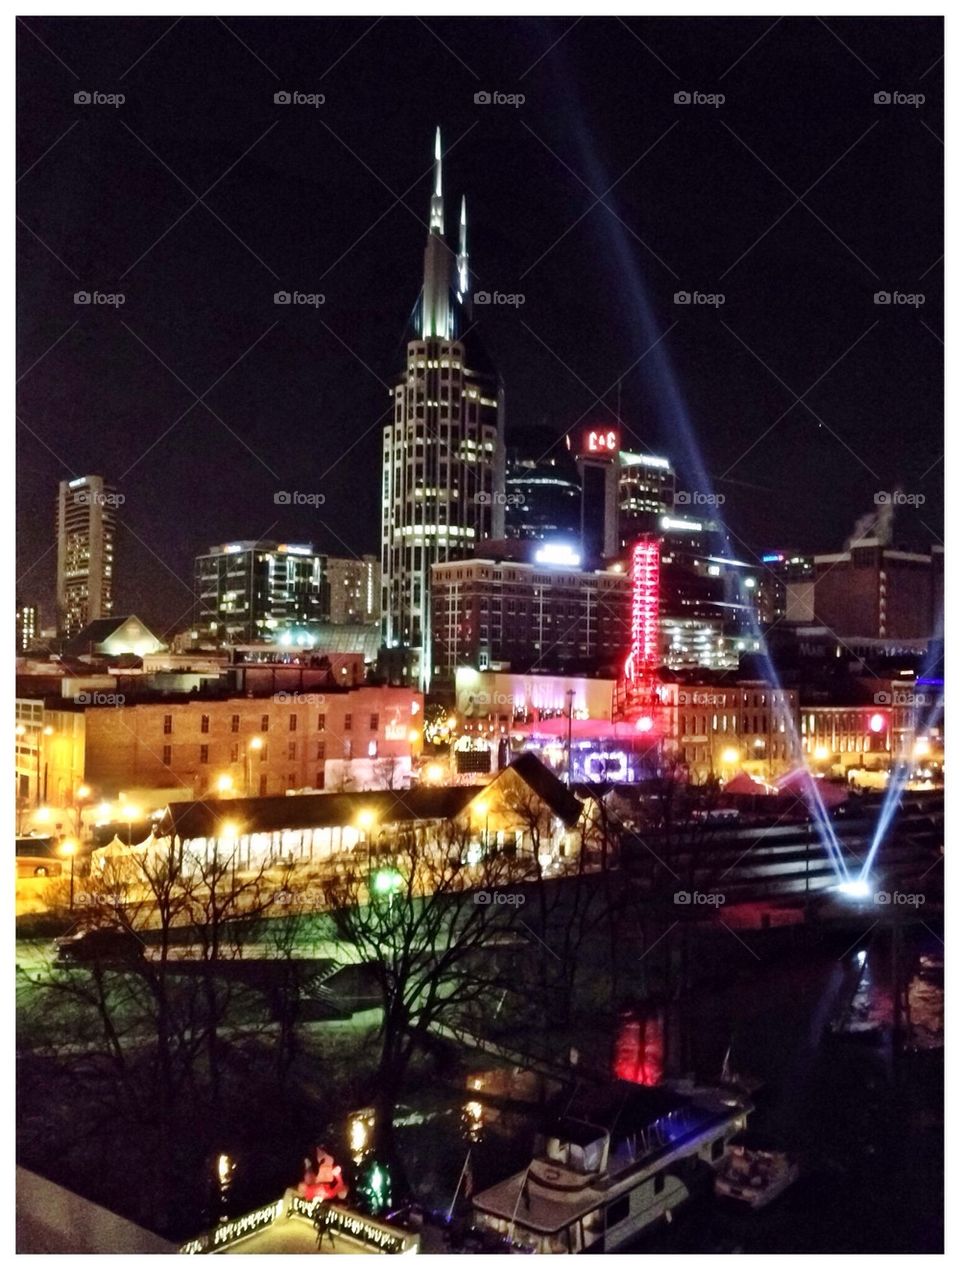 Nashville skyline at night 